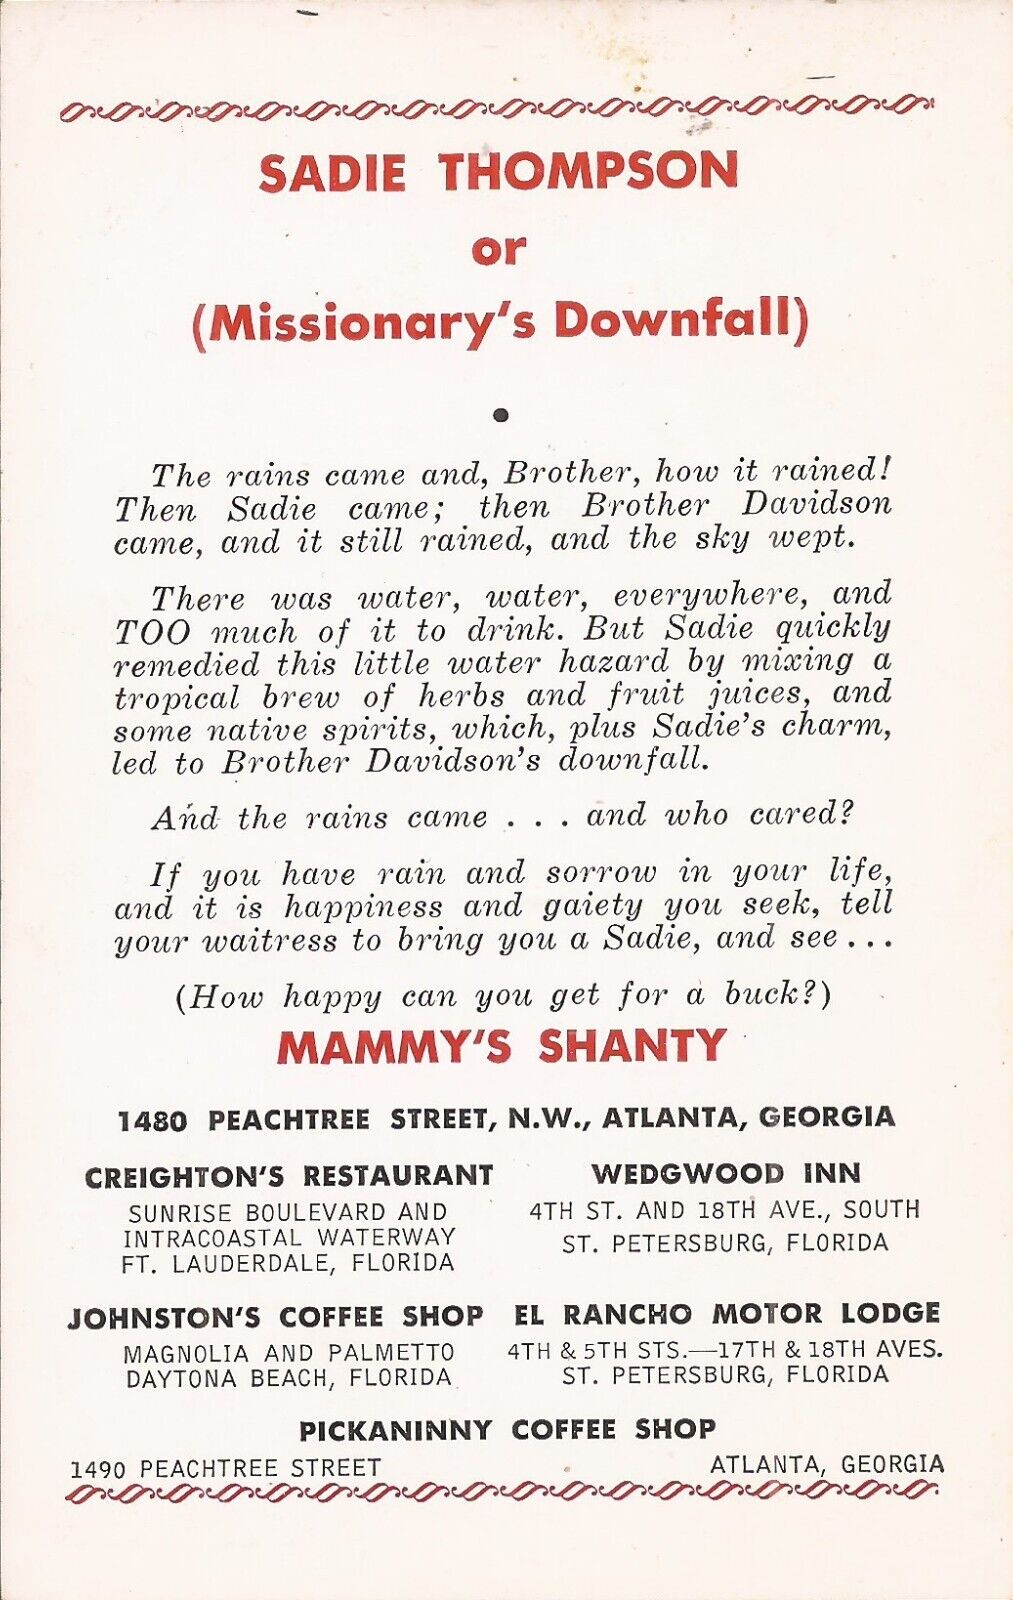 Atlanta, GEORGIA - Mammy's Shanty Restaurant - ADVERTISING